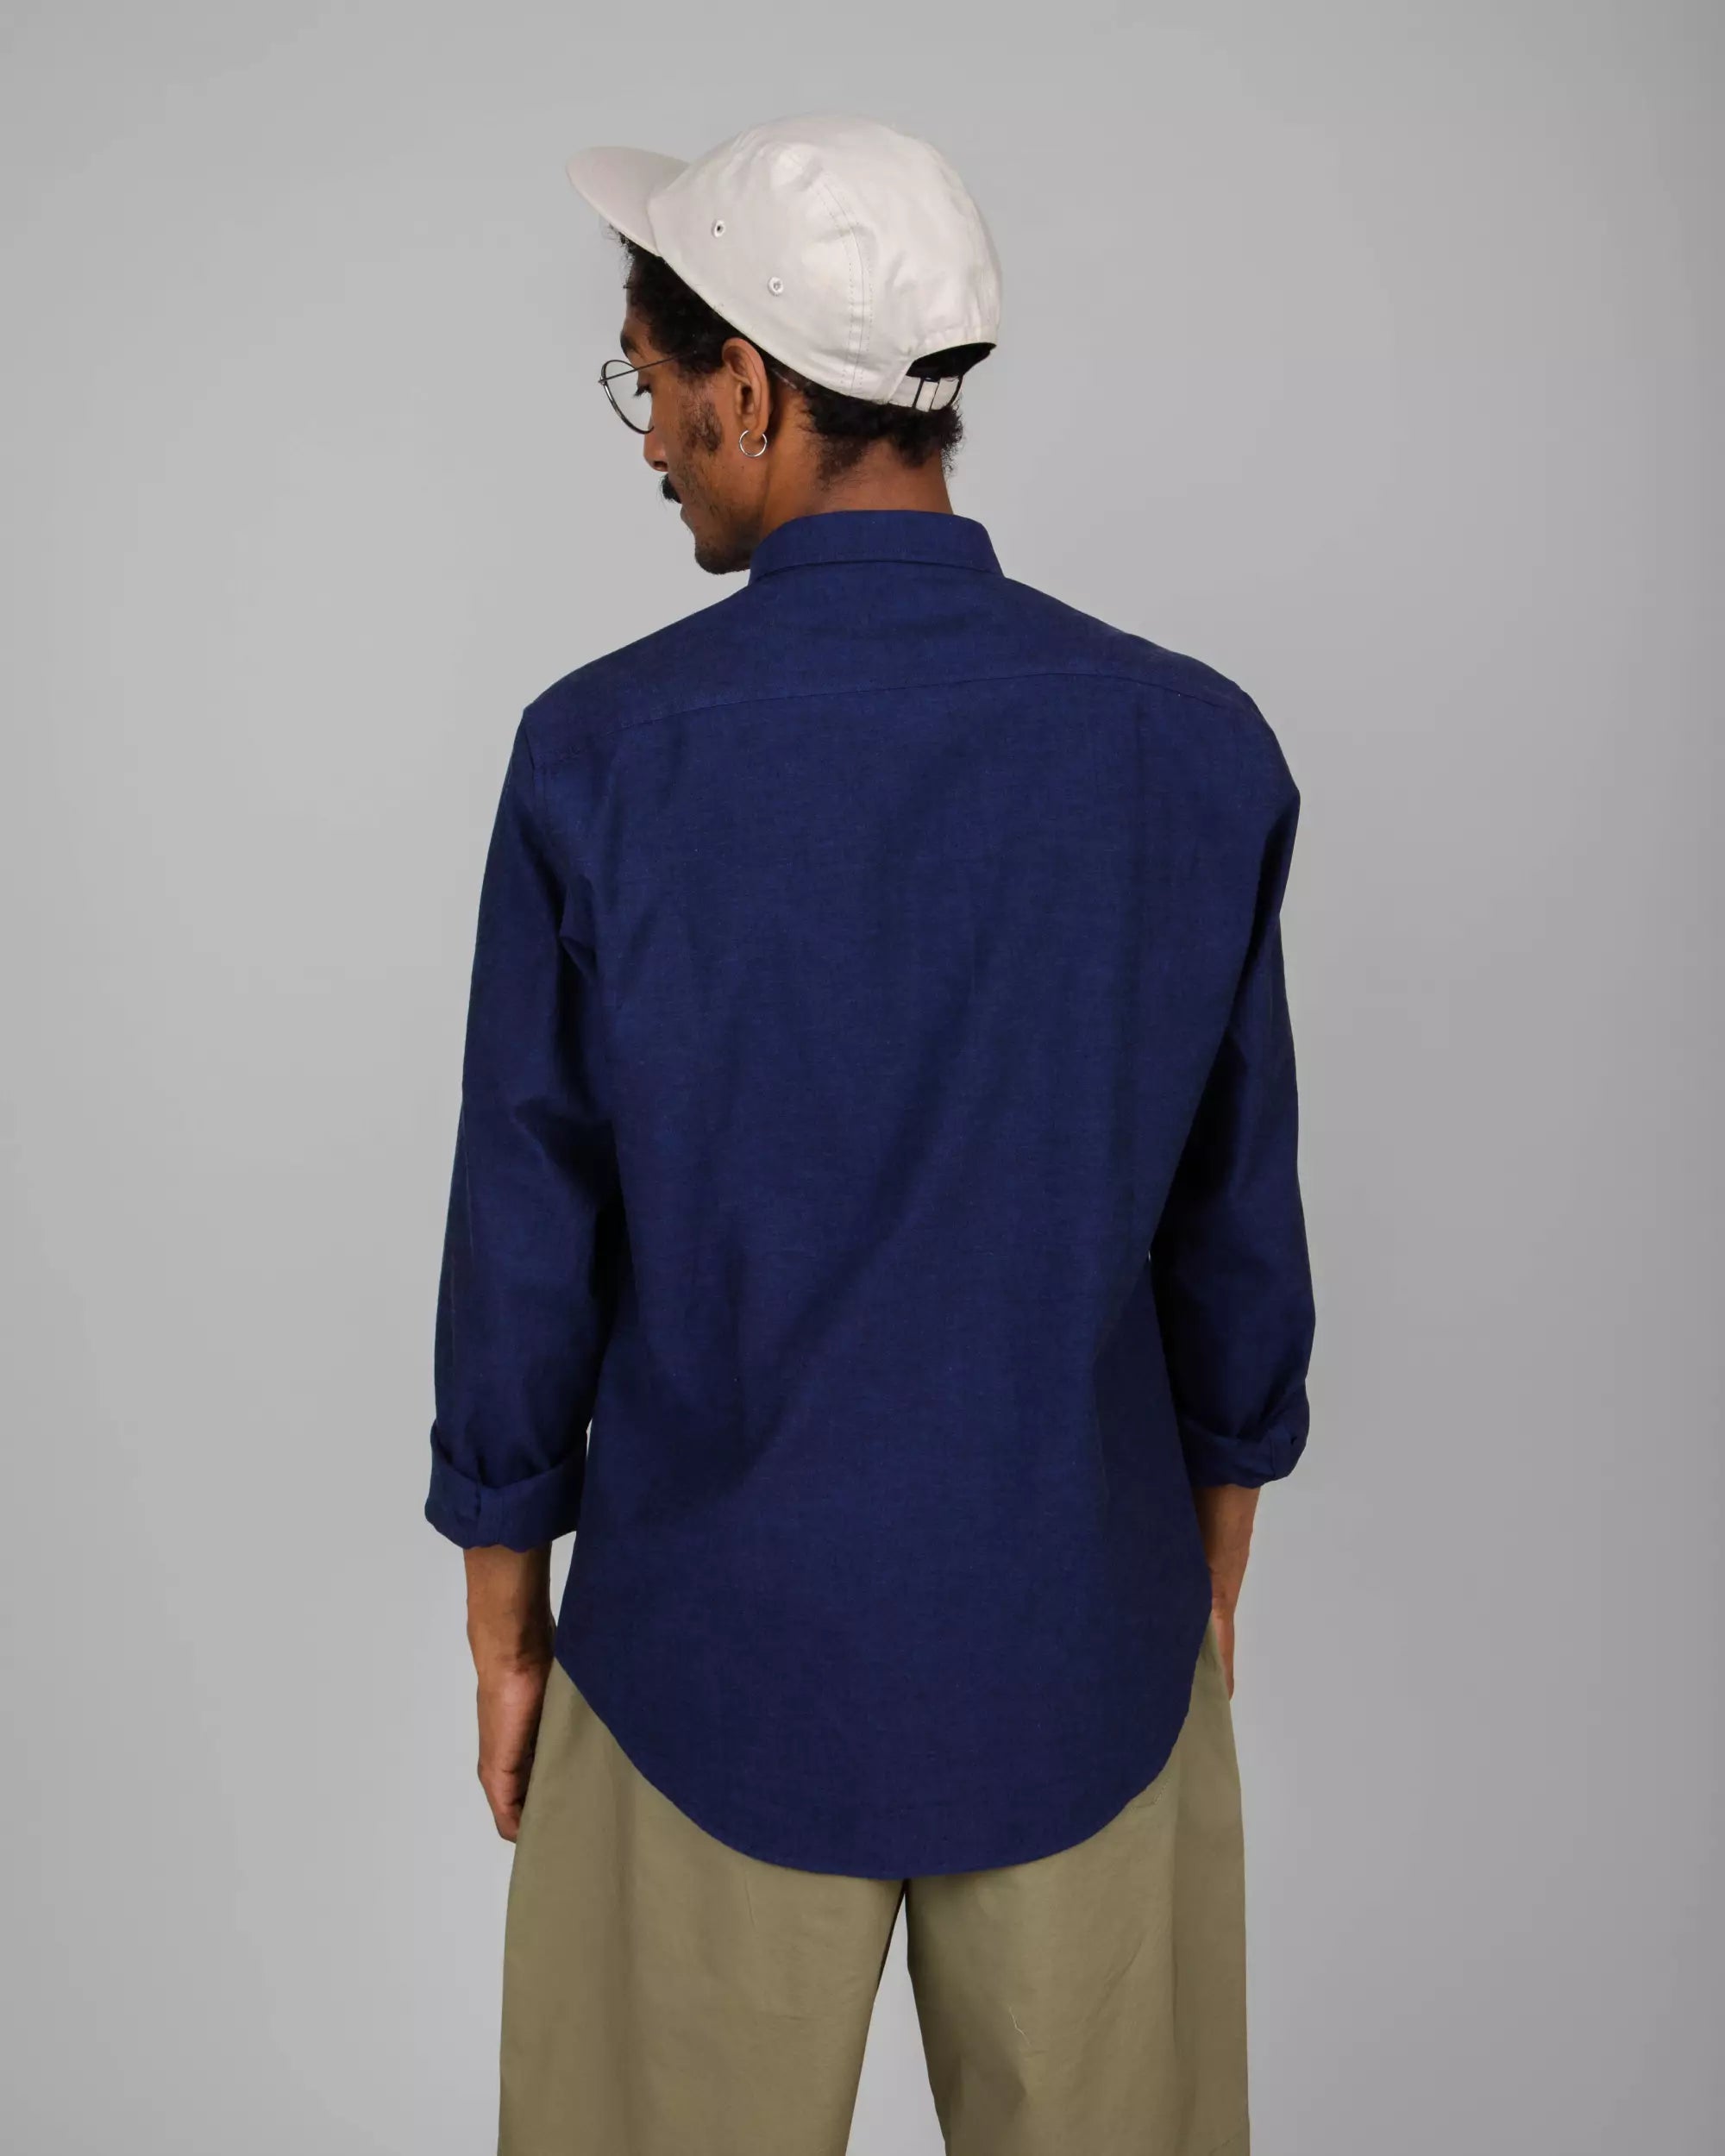 Dunkelblaues, langärmliges Hemd Oxford aus 100% Bio-Baumwolle von Brava Fabrics